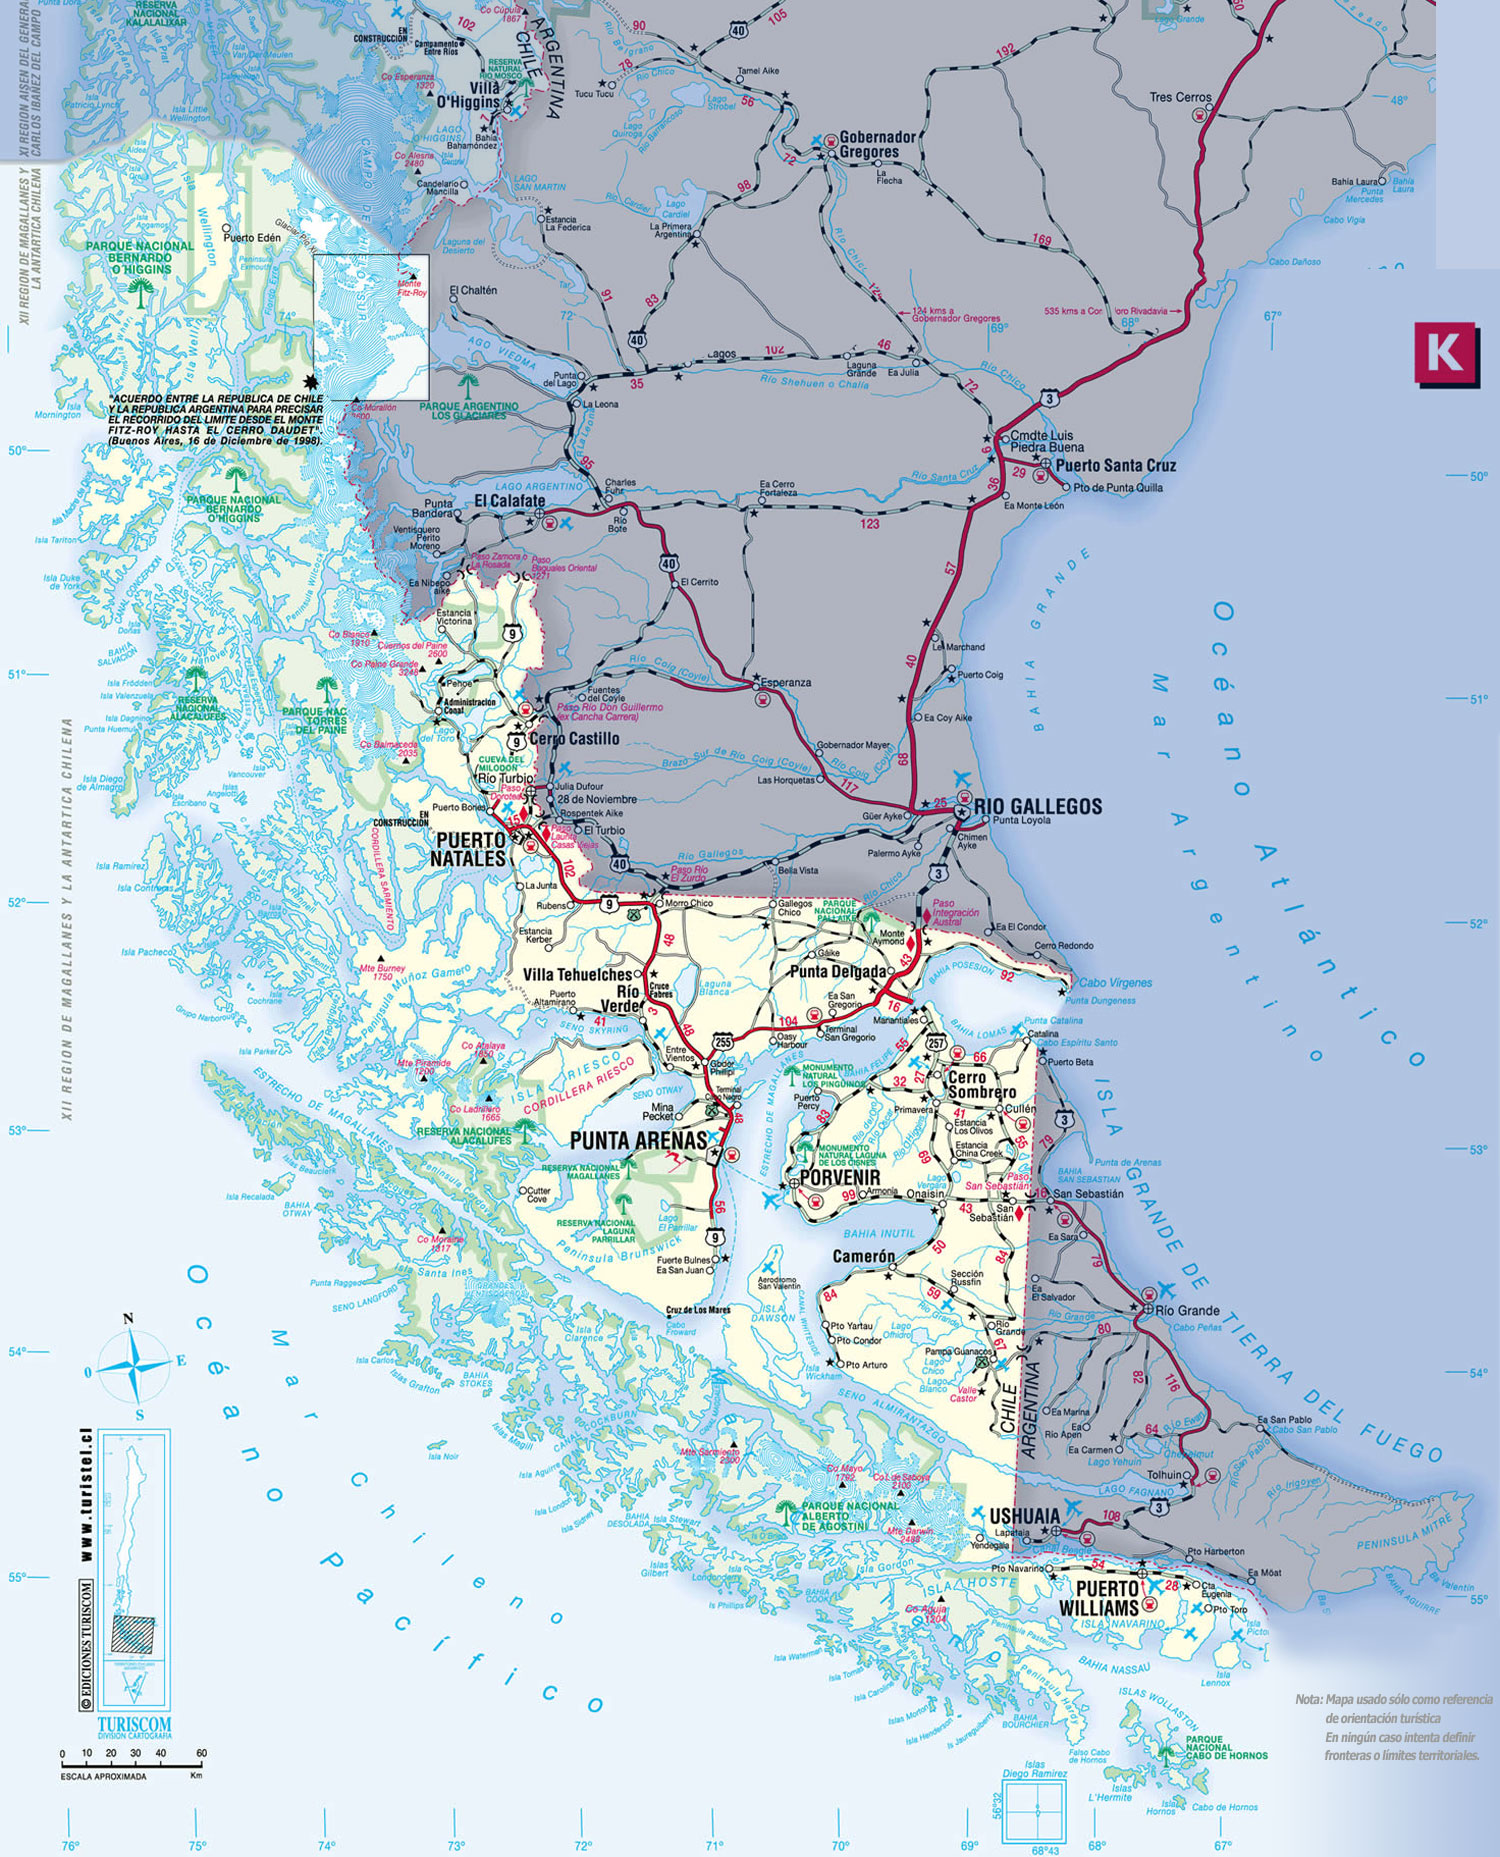 Estado de rutas y condición meteorológica, región de Magallanes, 18 julio, 08.30 horas